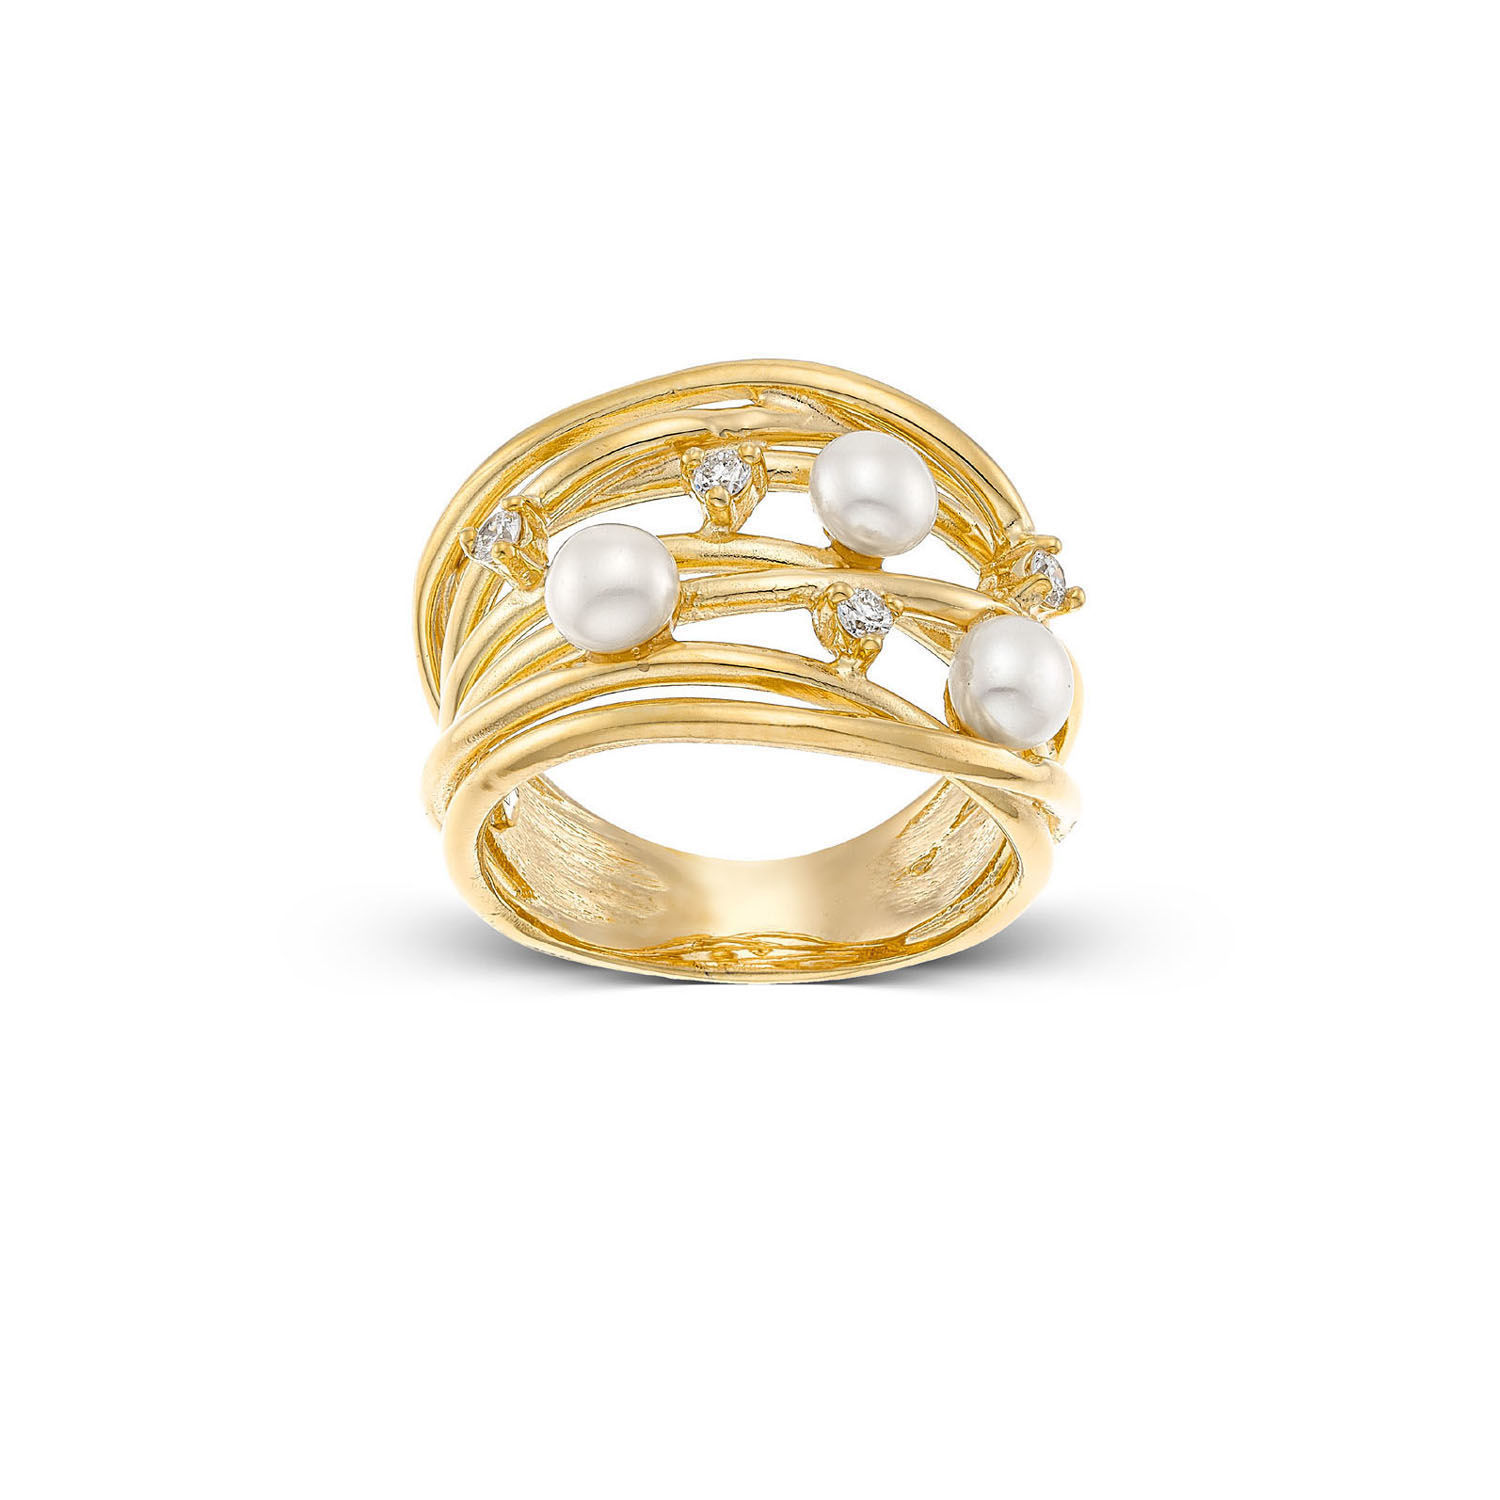 Δαχτυλίδι Pearls από χρυσό 18K με freshwater pearls